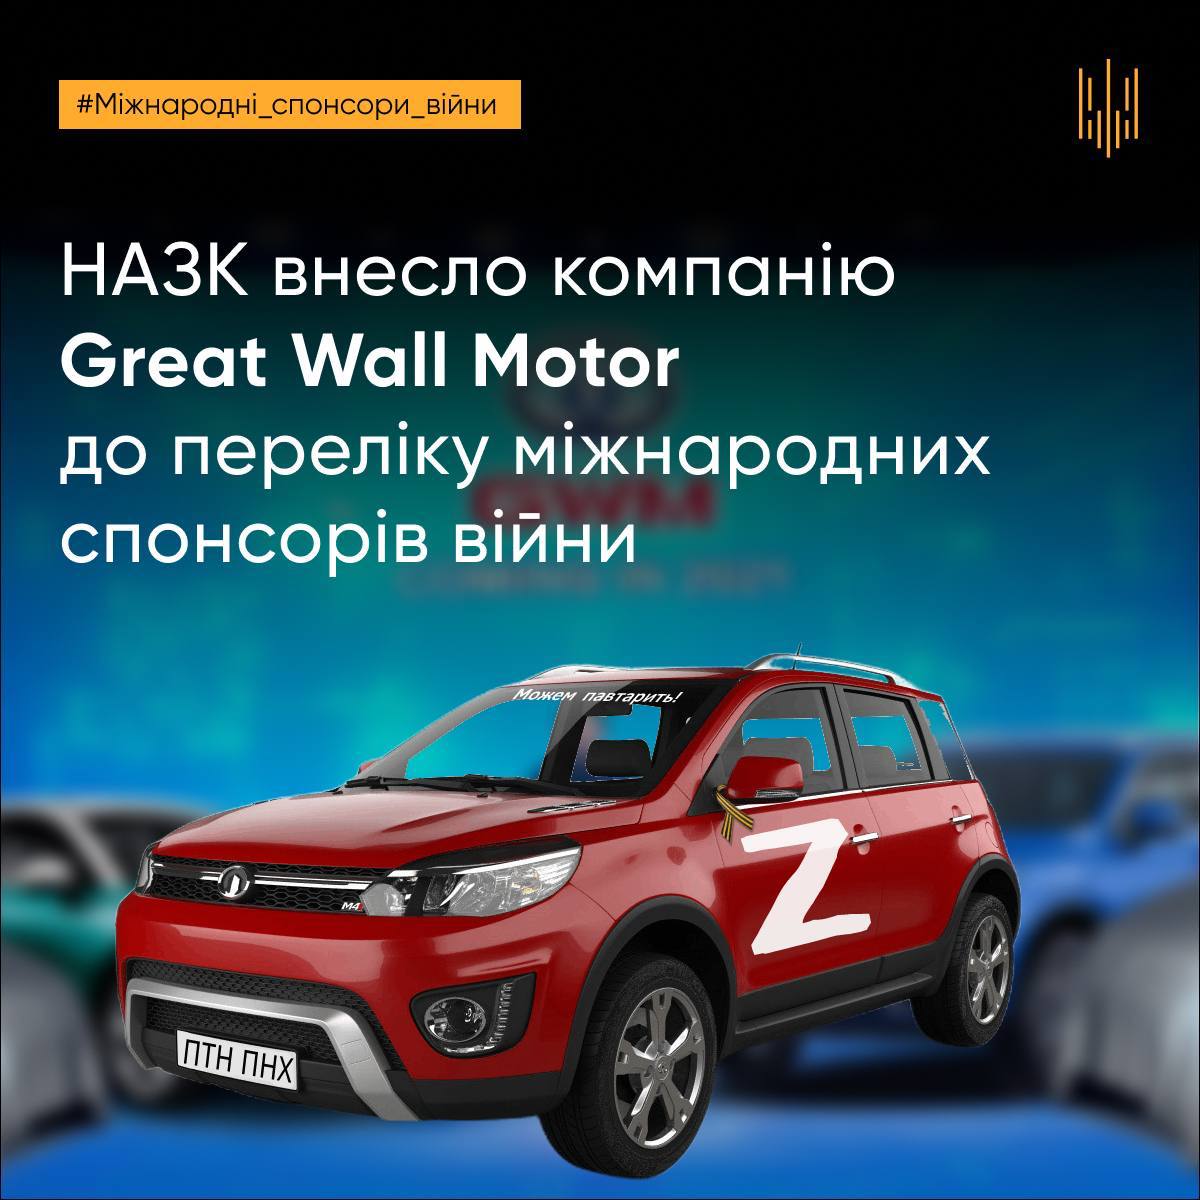 Great Wall Motor внесли в перечень международных спонсоров войны